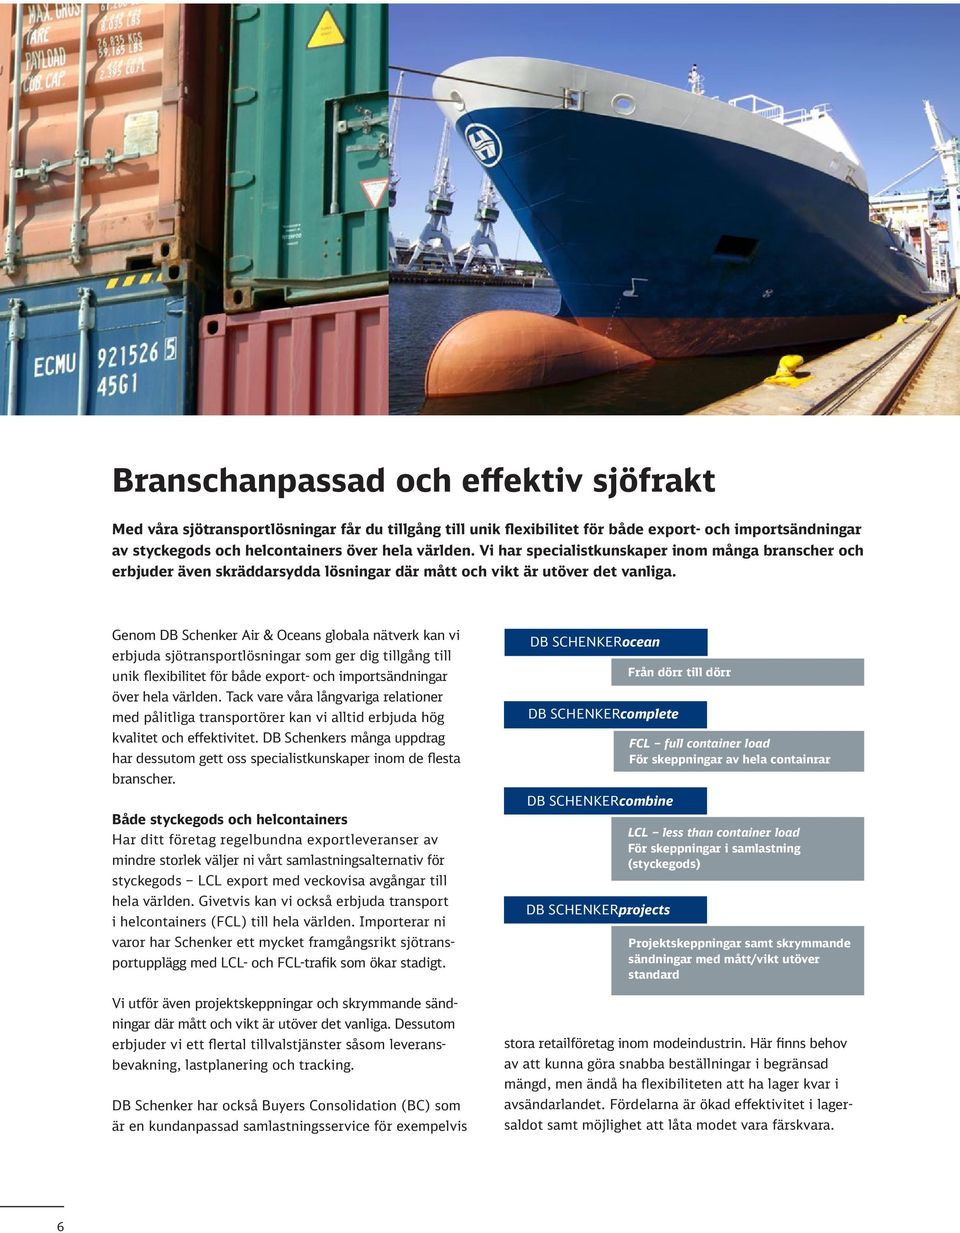 Genom DB Schenker Air & Oceans globala nätverk kan vi erbjuda sjötransportlösningar som ger dig tillgång till unik flexibilitet för både export- och importsändningar över hela världen.